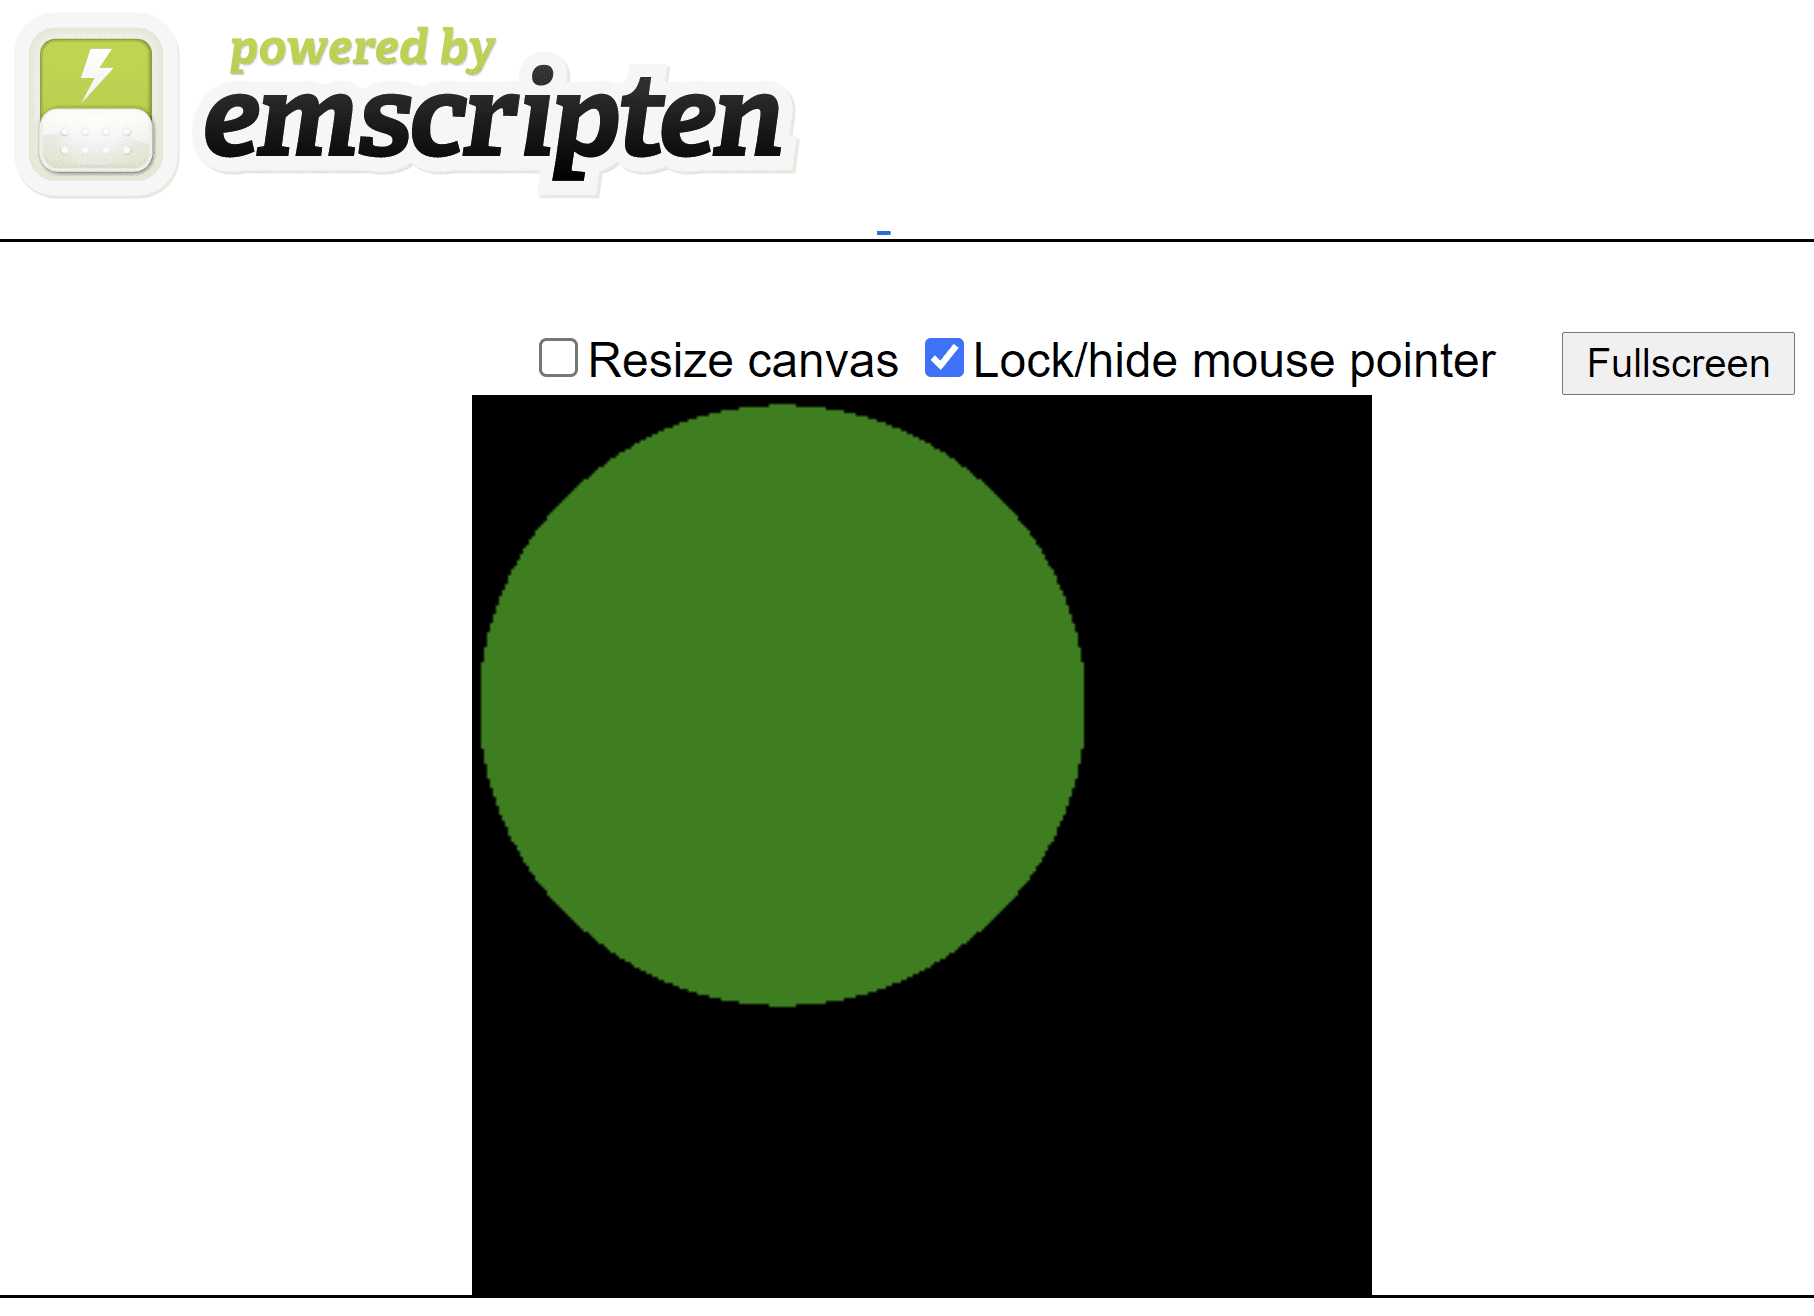 脚本生成的 HTML 网页，在黑色正方形画布上显示一个绿色圆圈。